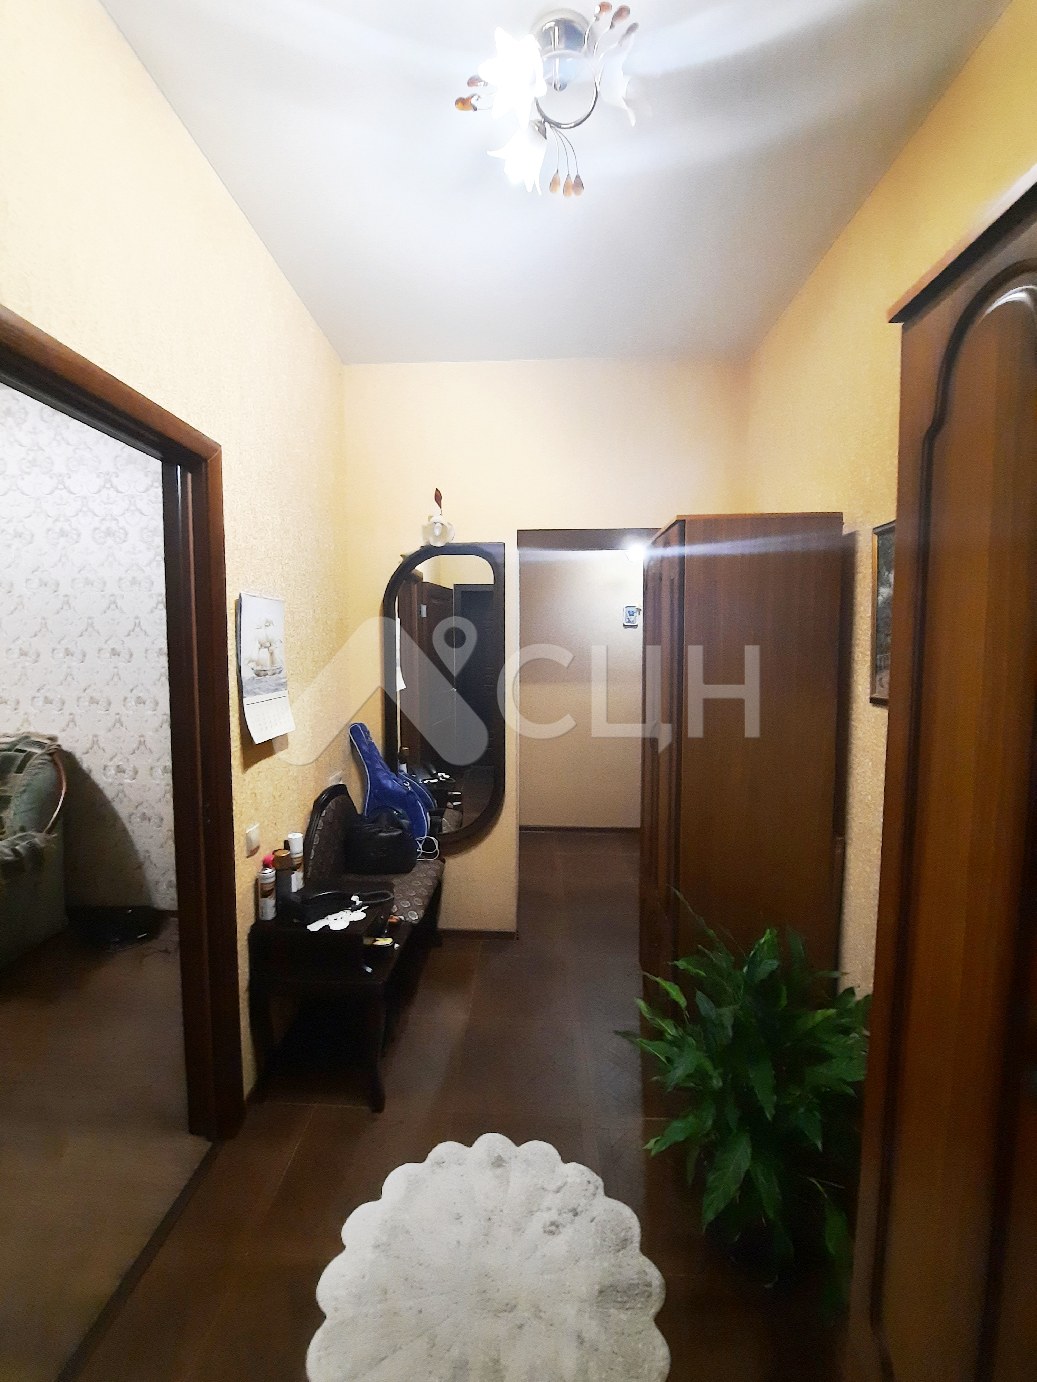 купить дом в сарове
: Г. Саров, улица Дзержинского, 7, 2-комн квартира, этаж 1 из 3, продажа.